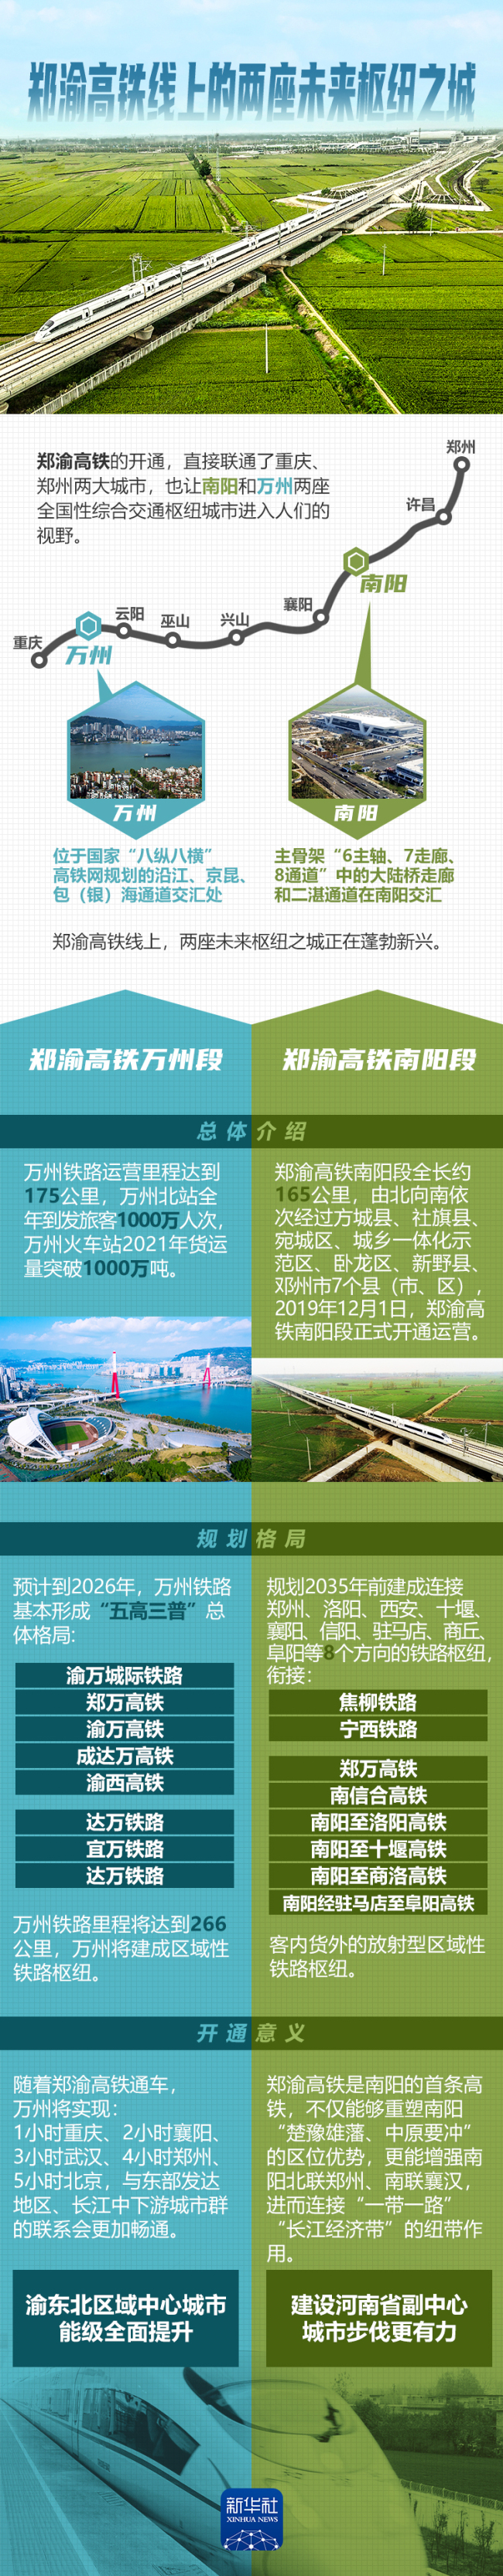 长图海报｜郑渝高铁线上的两座未来枢纽之城